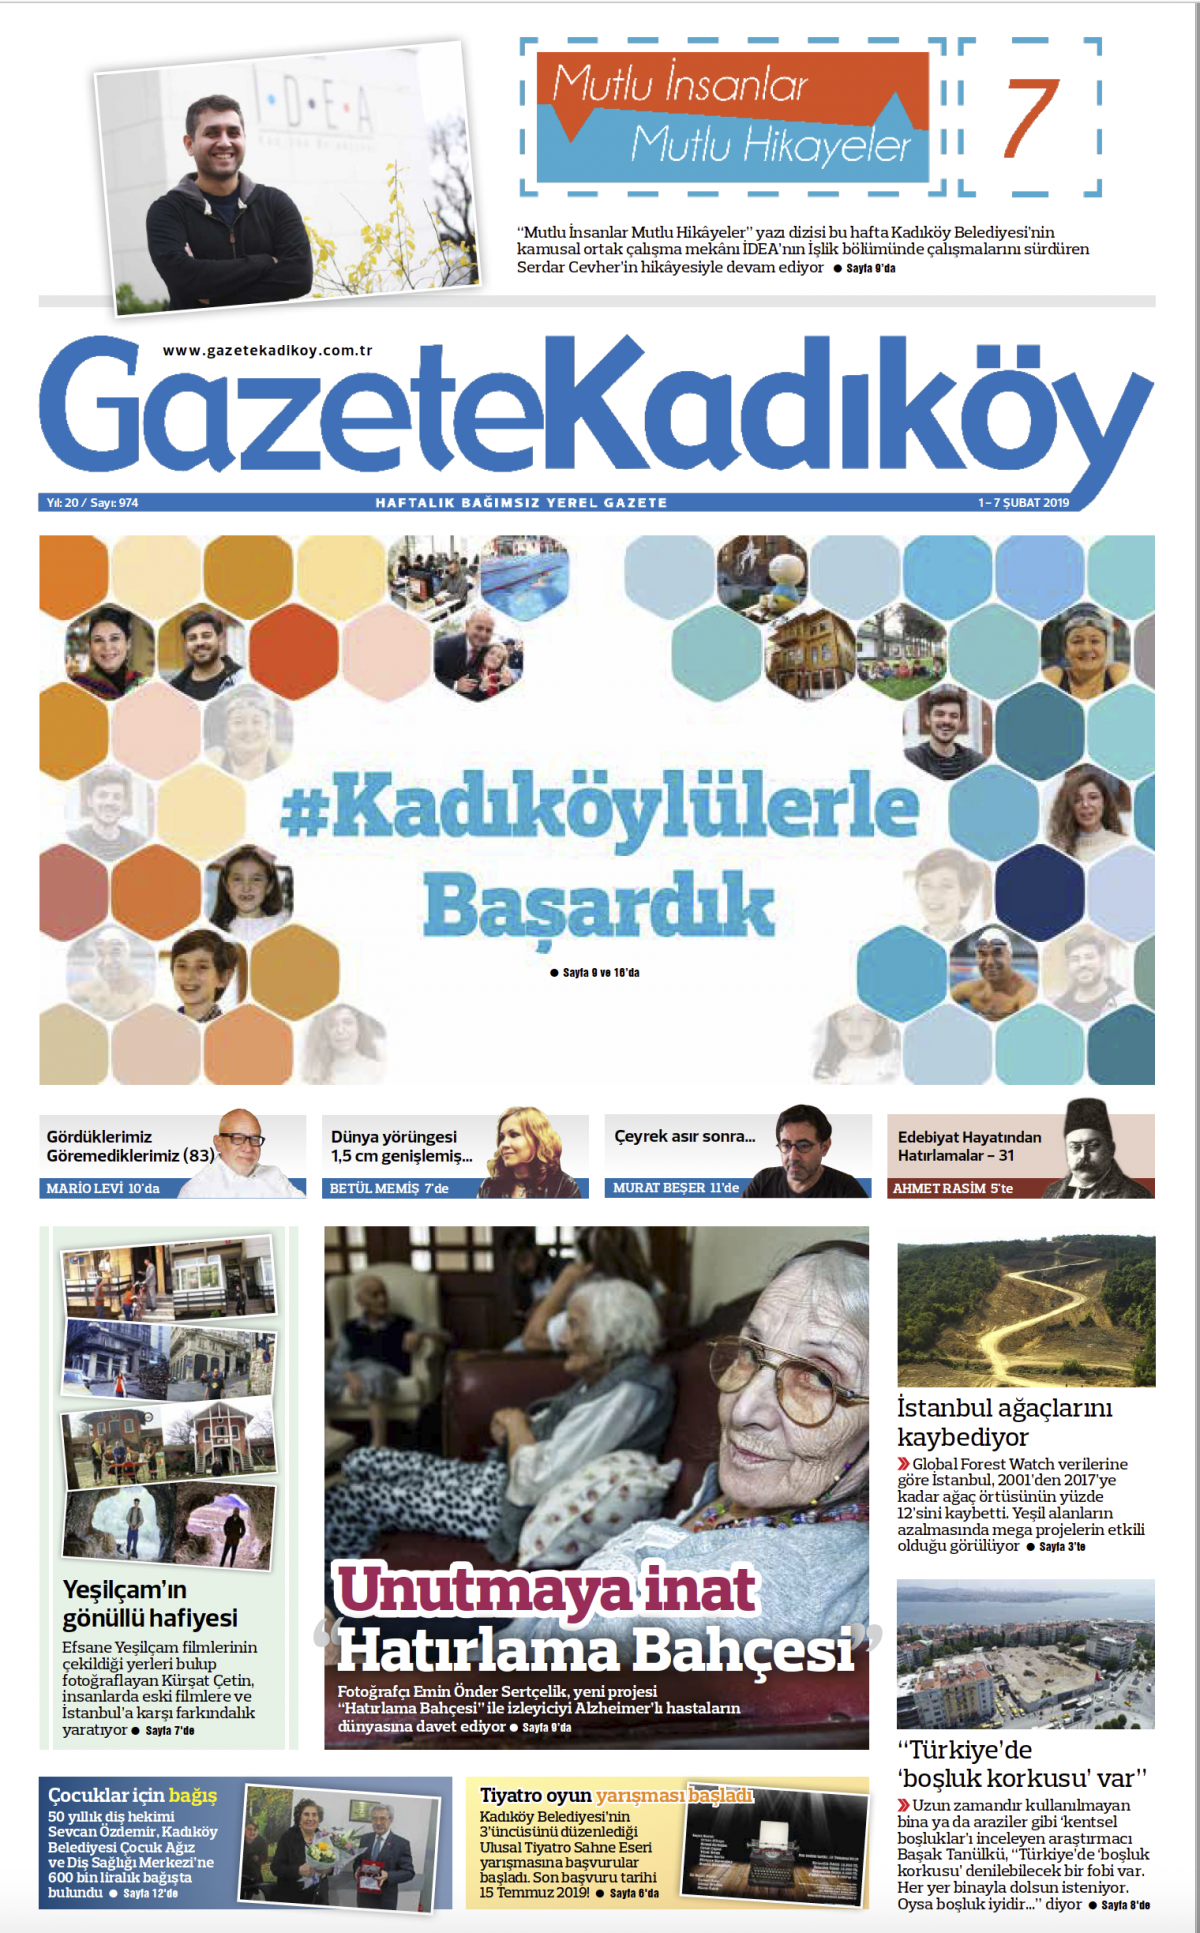 Gazete Kadıköy - 974. SAYI